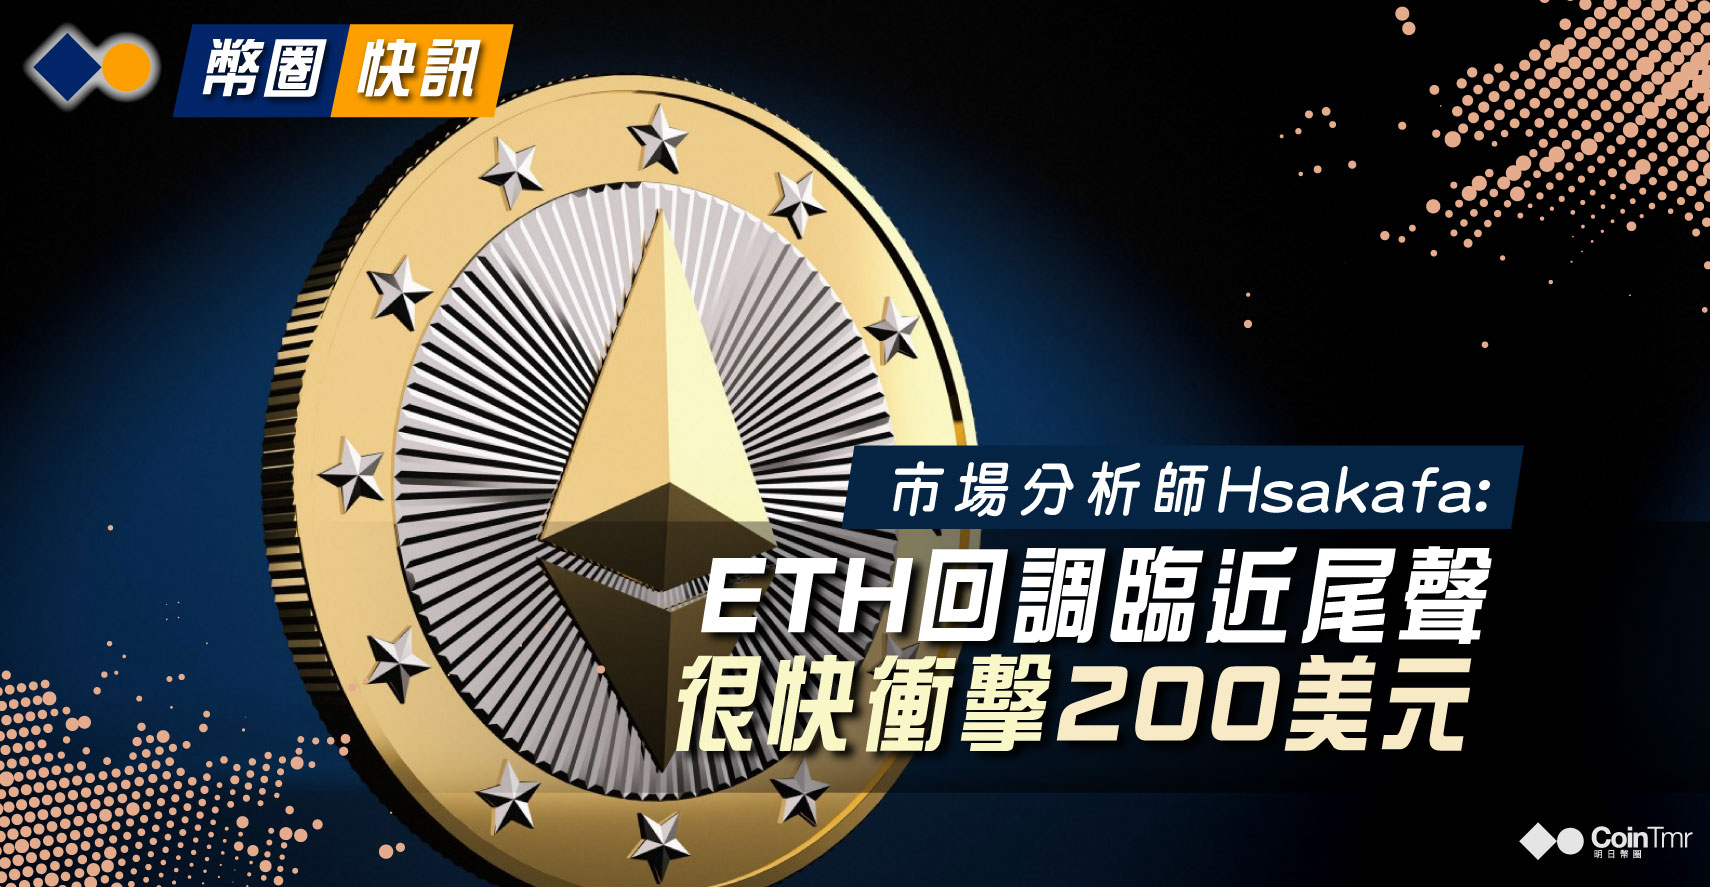 Eth 200 где можно обменять юани